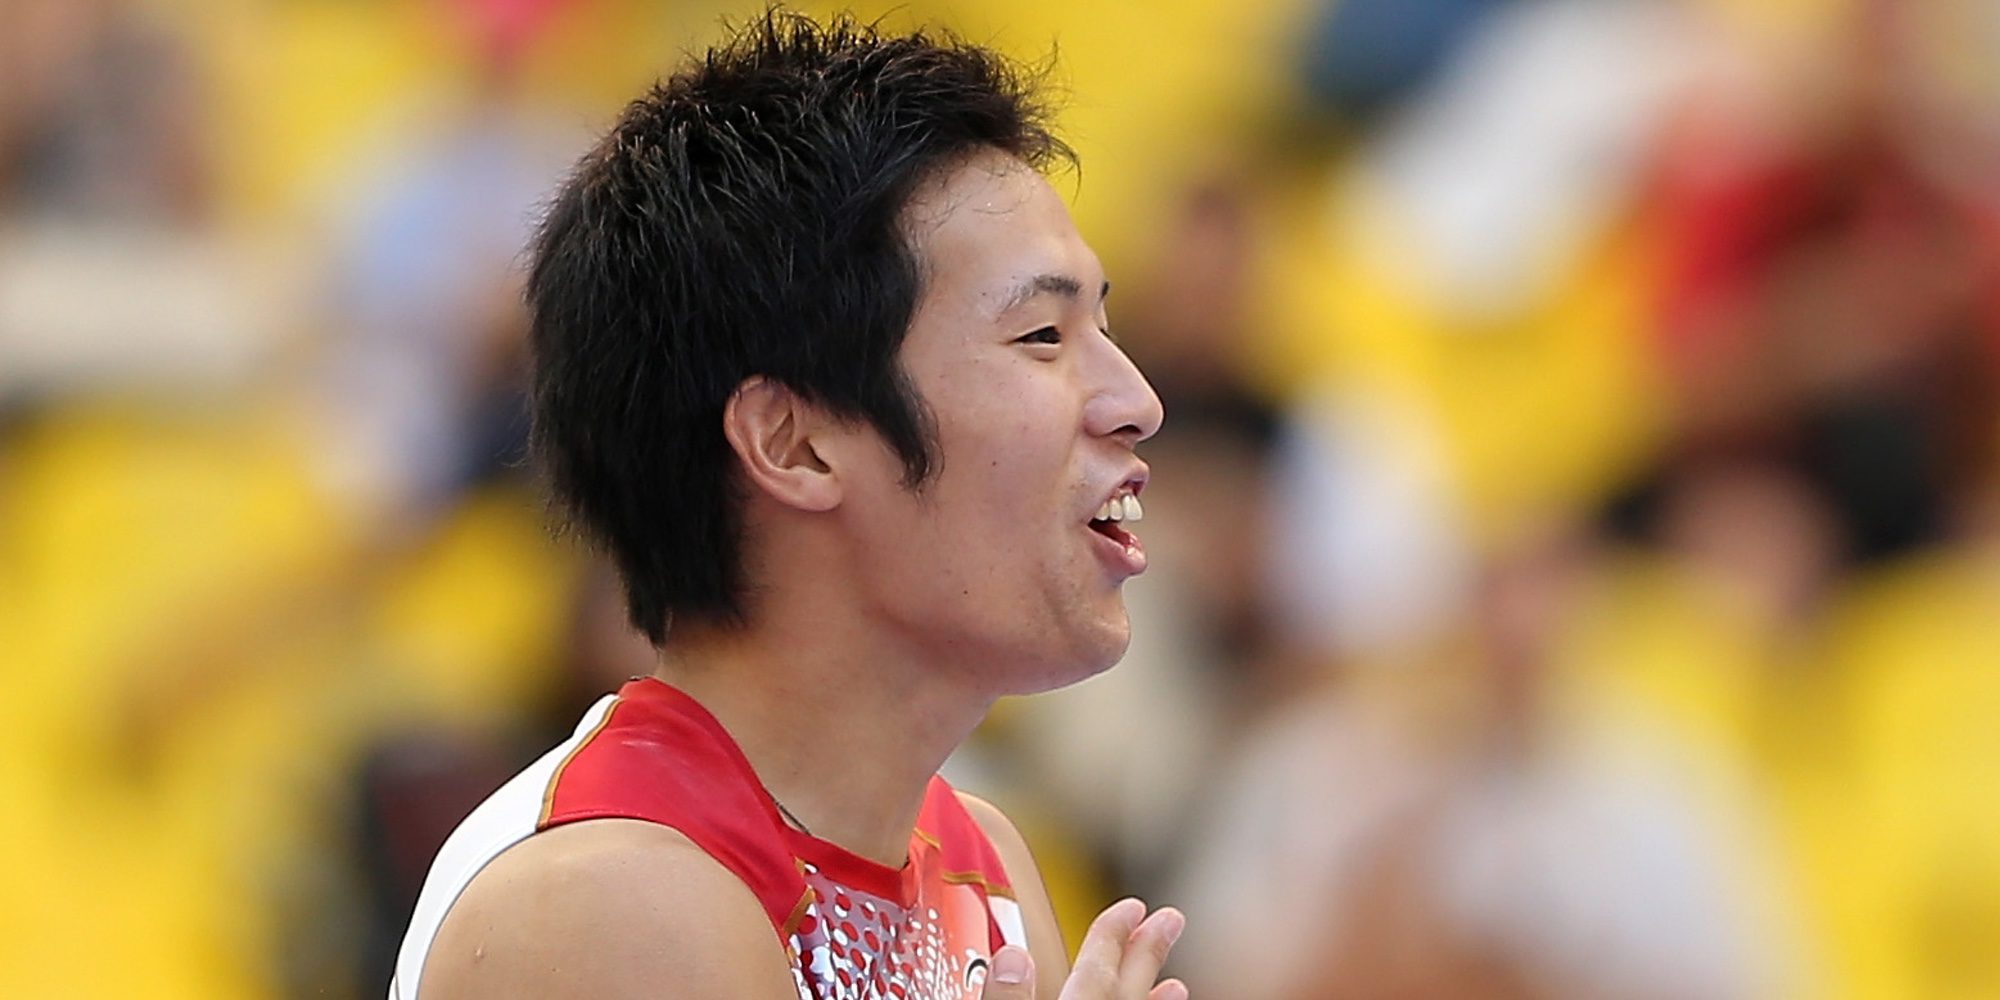 Río 2016: El deportista japonés que quedó eliminado del salto con pértiga por culpa de su pene